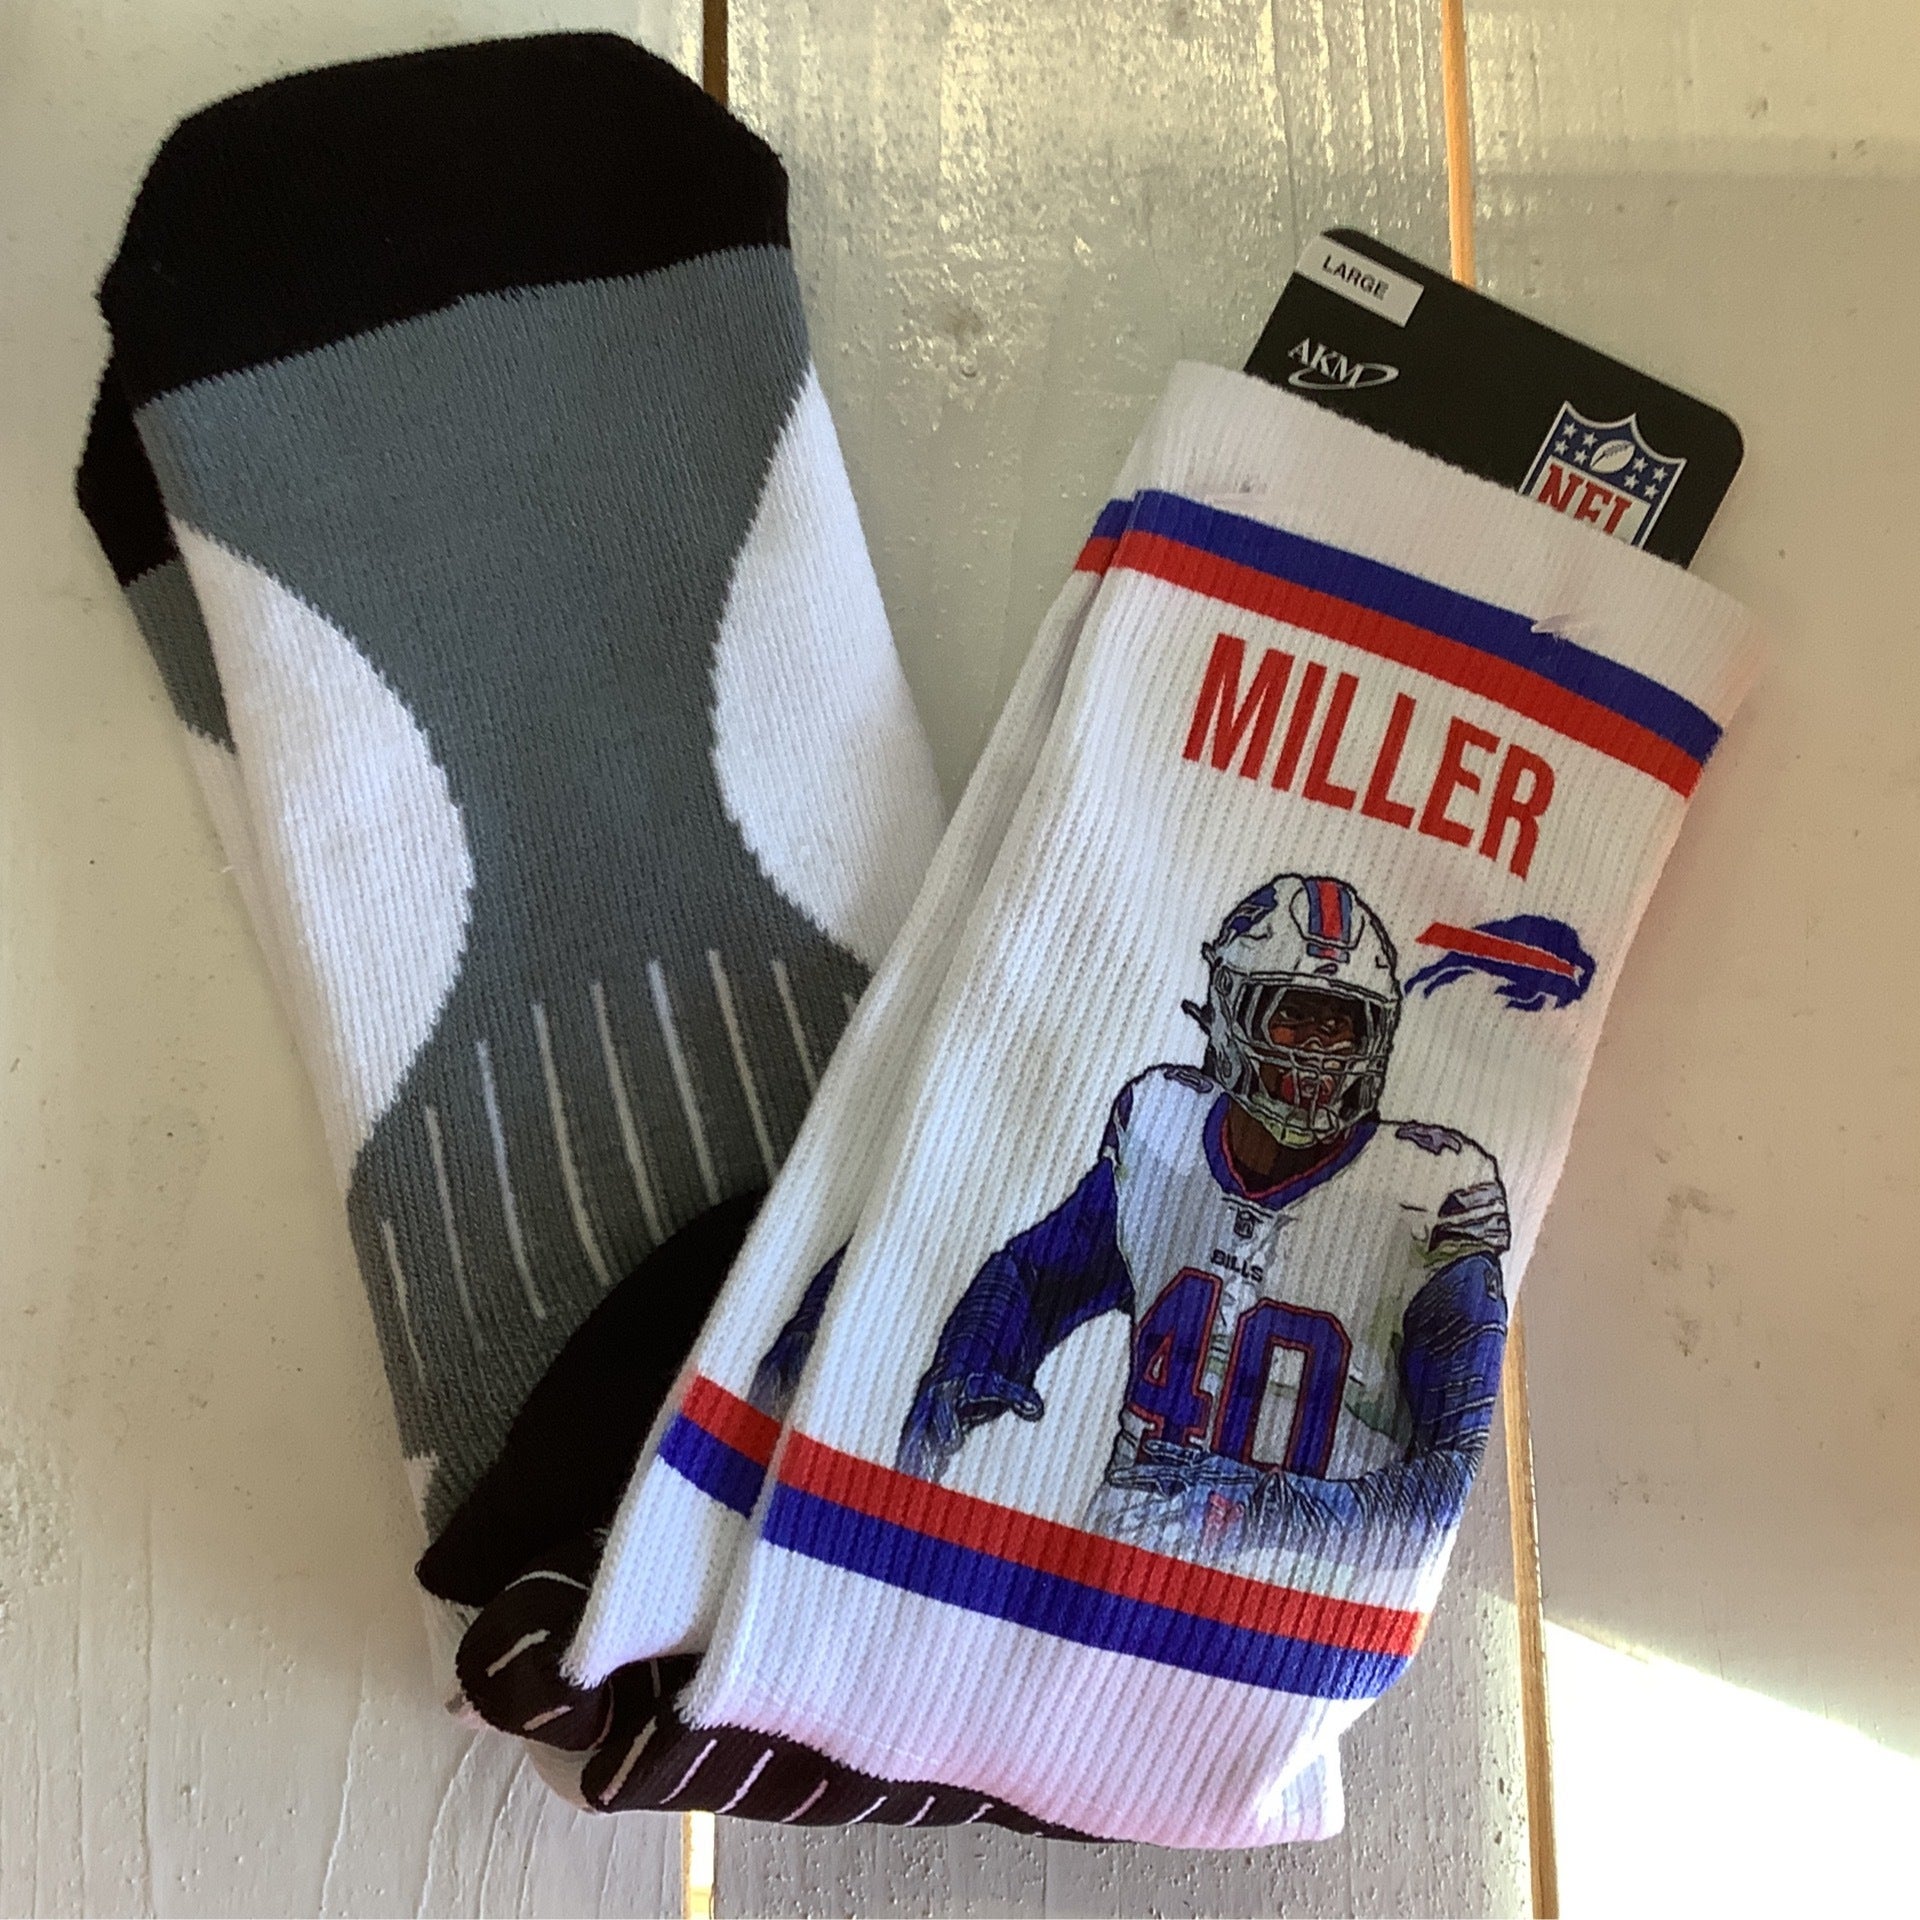 Von Miller Player Socks